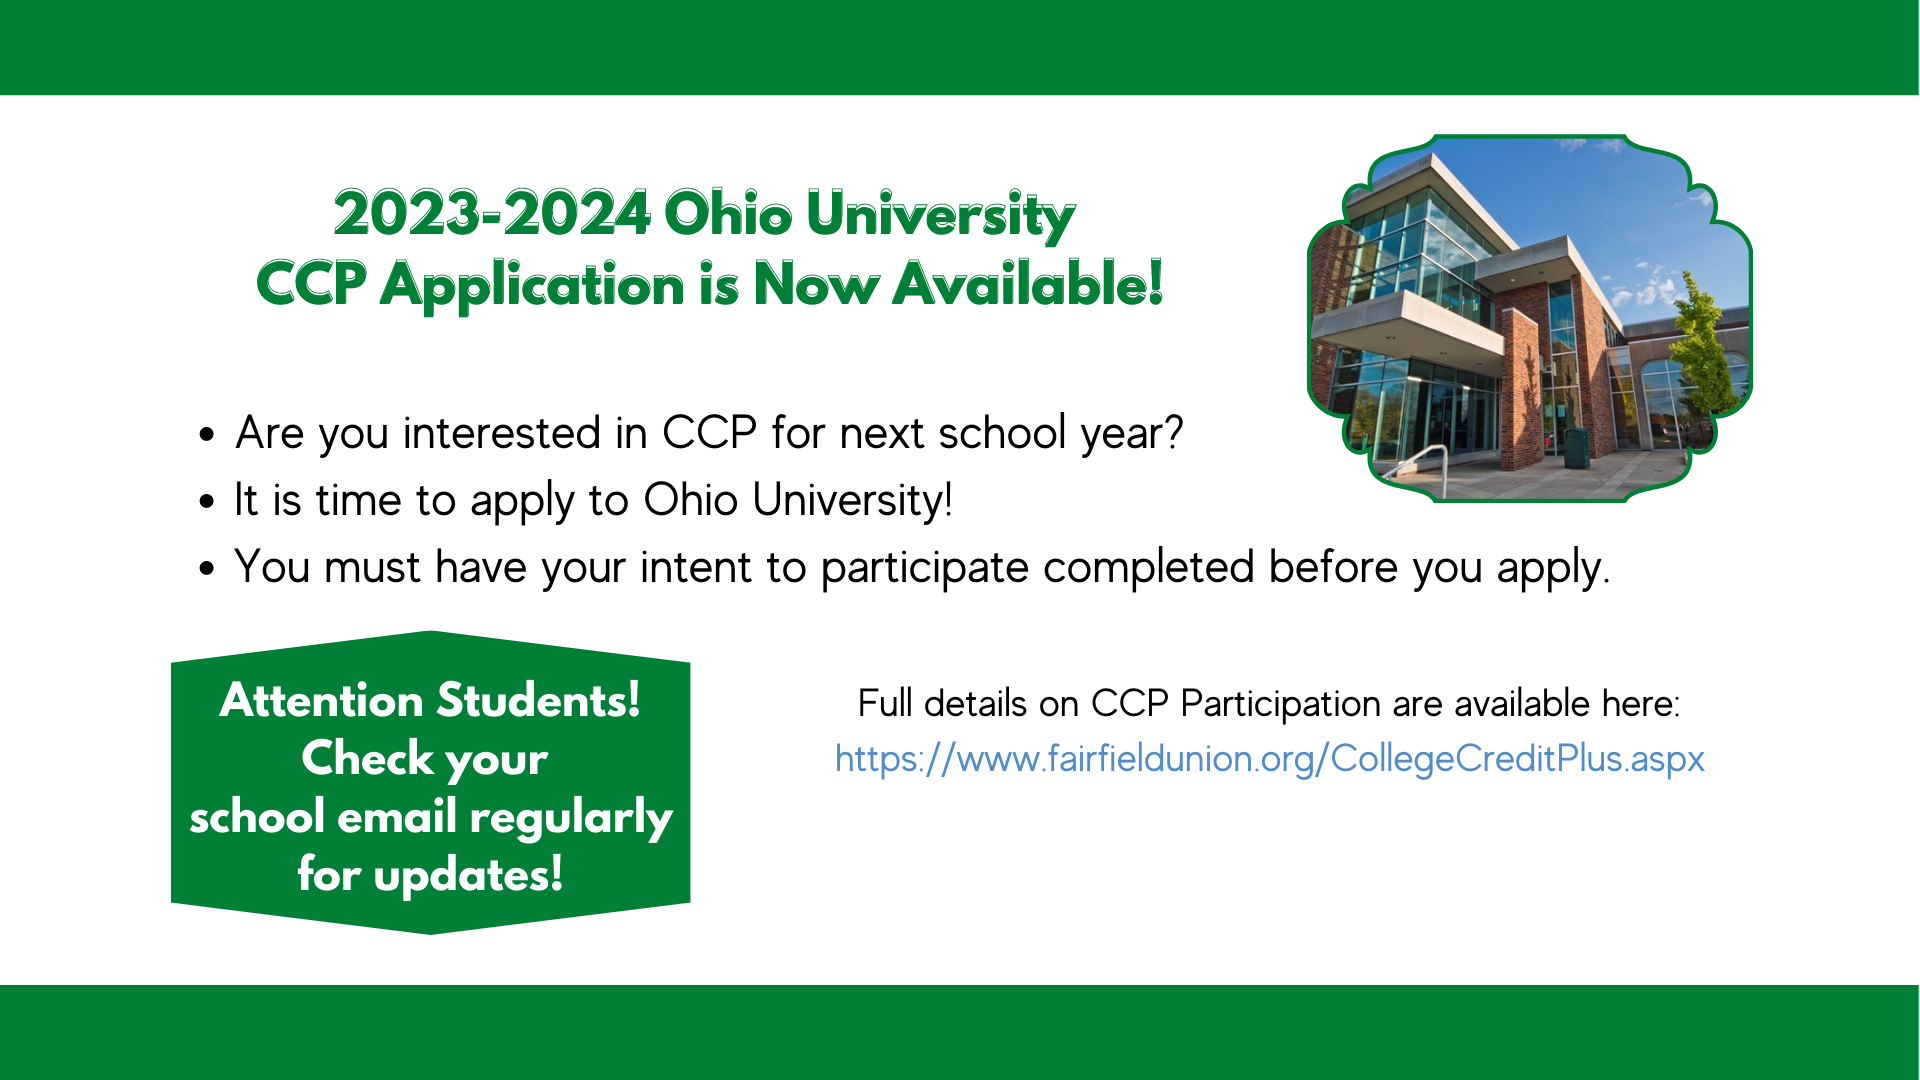 Apply now to Ohio University